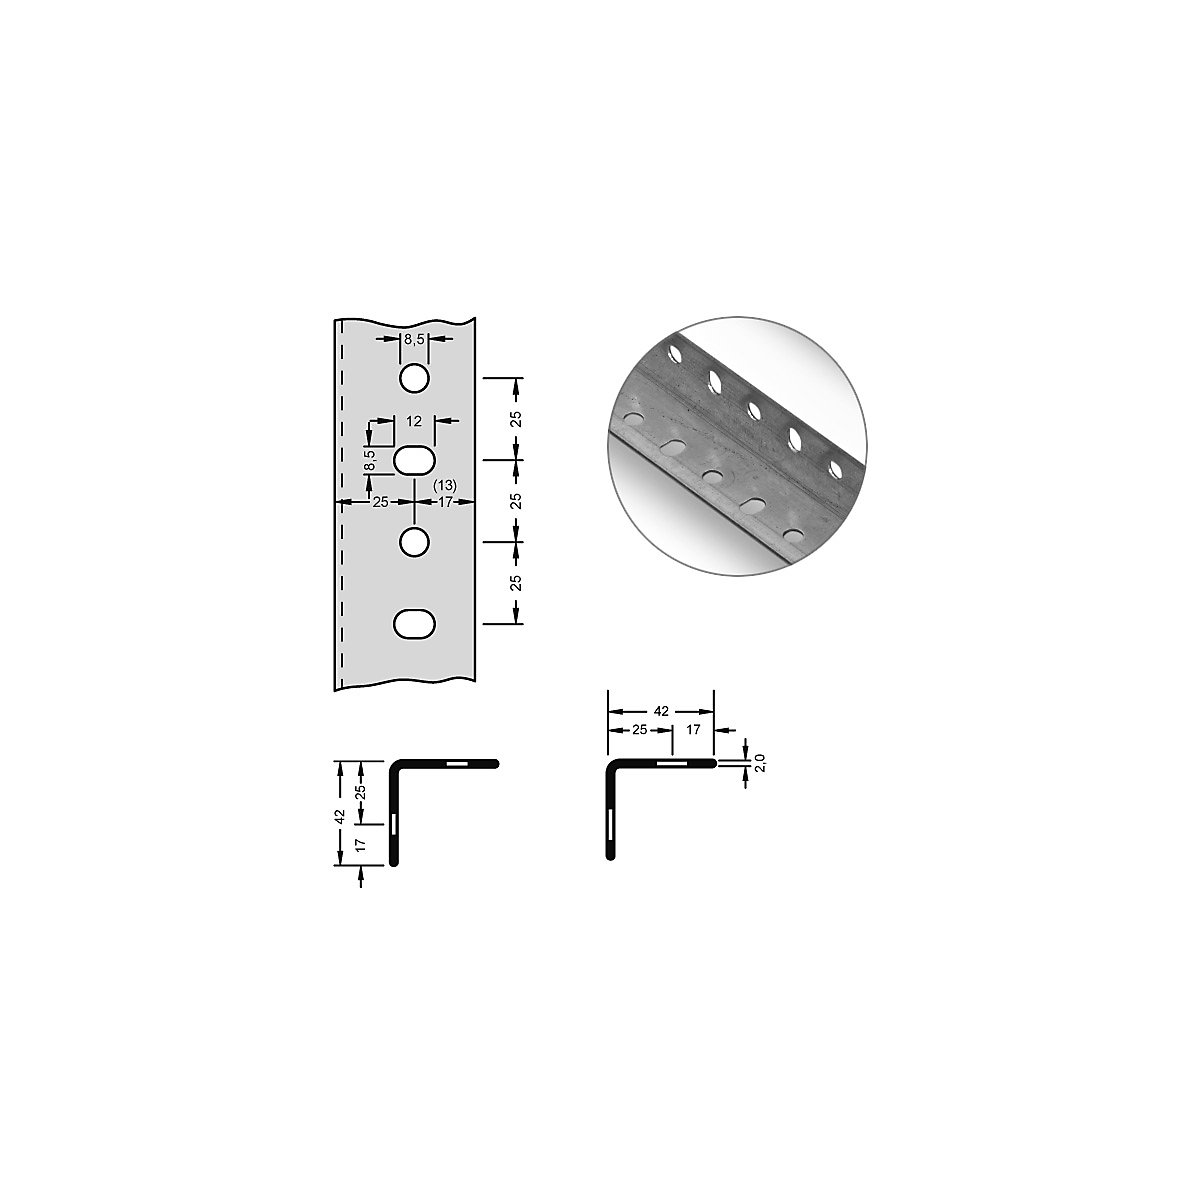 hofe – Stalowy profil narożny do systemu modułowego, 42 x 42 x 2 mm, dł. 2,5 m, ocynkowanie, opak. 8 szt.